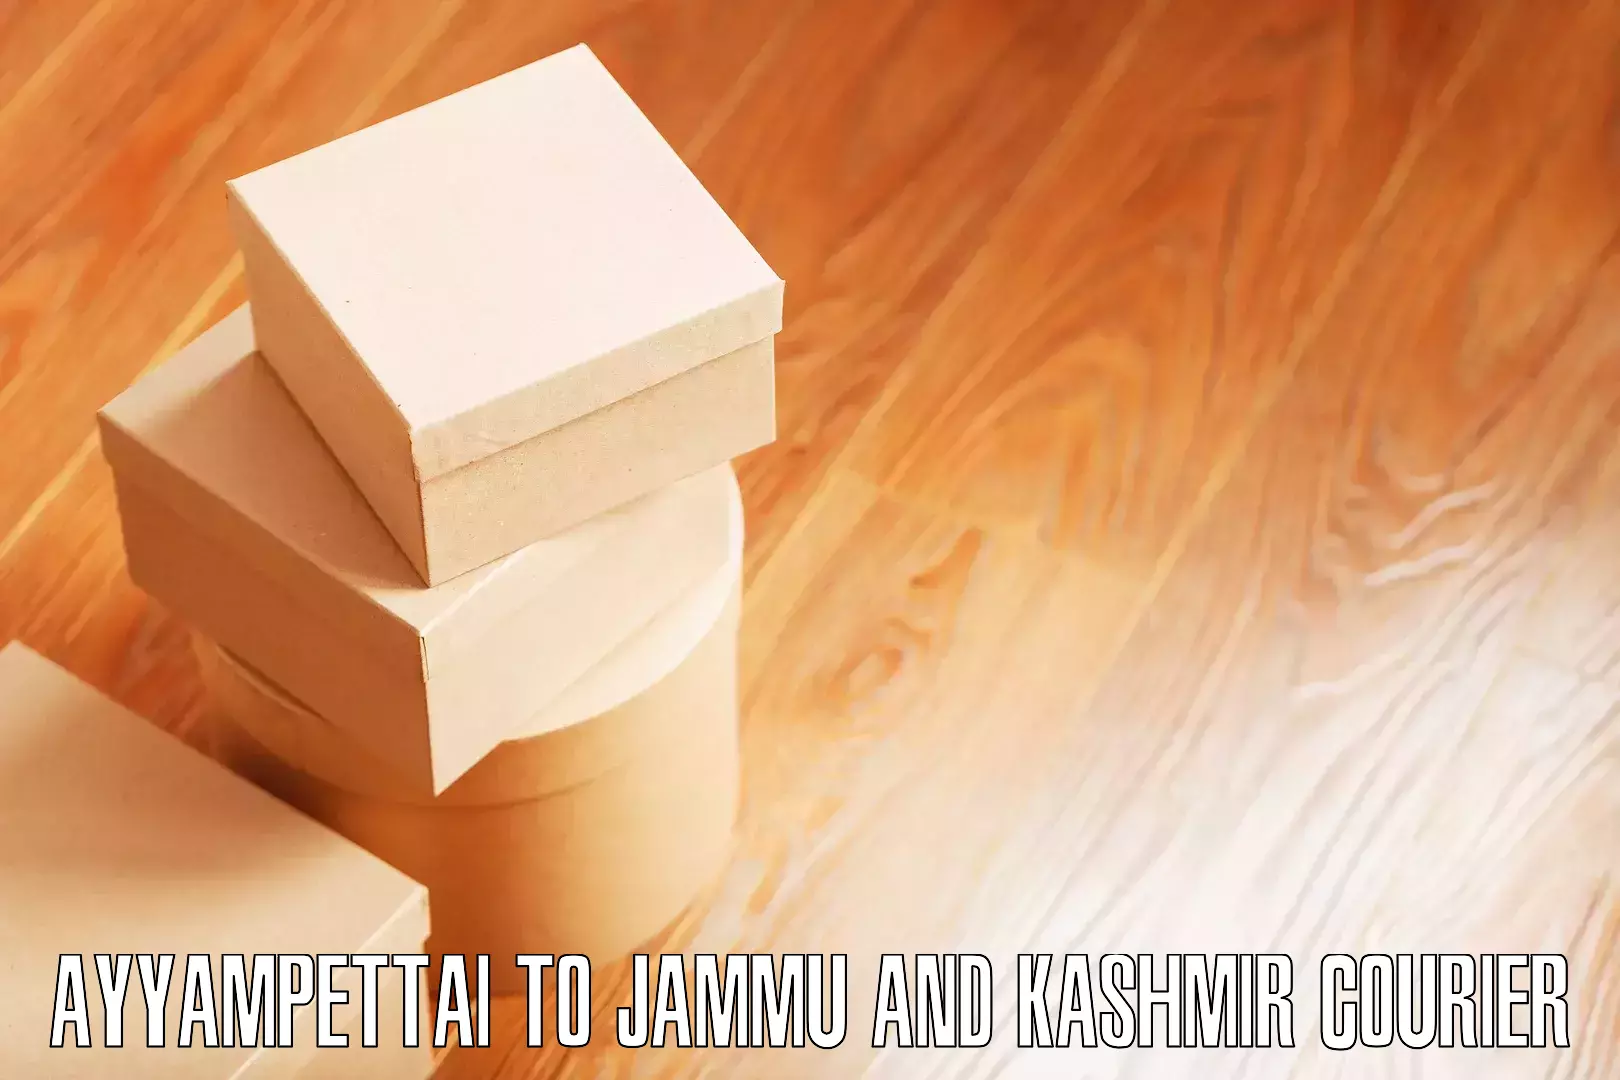 Moving and packing experts Ayyampettai to University of Jammu